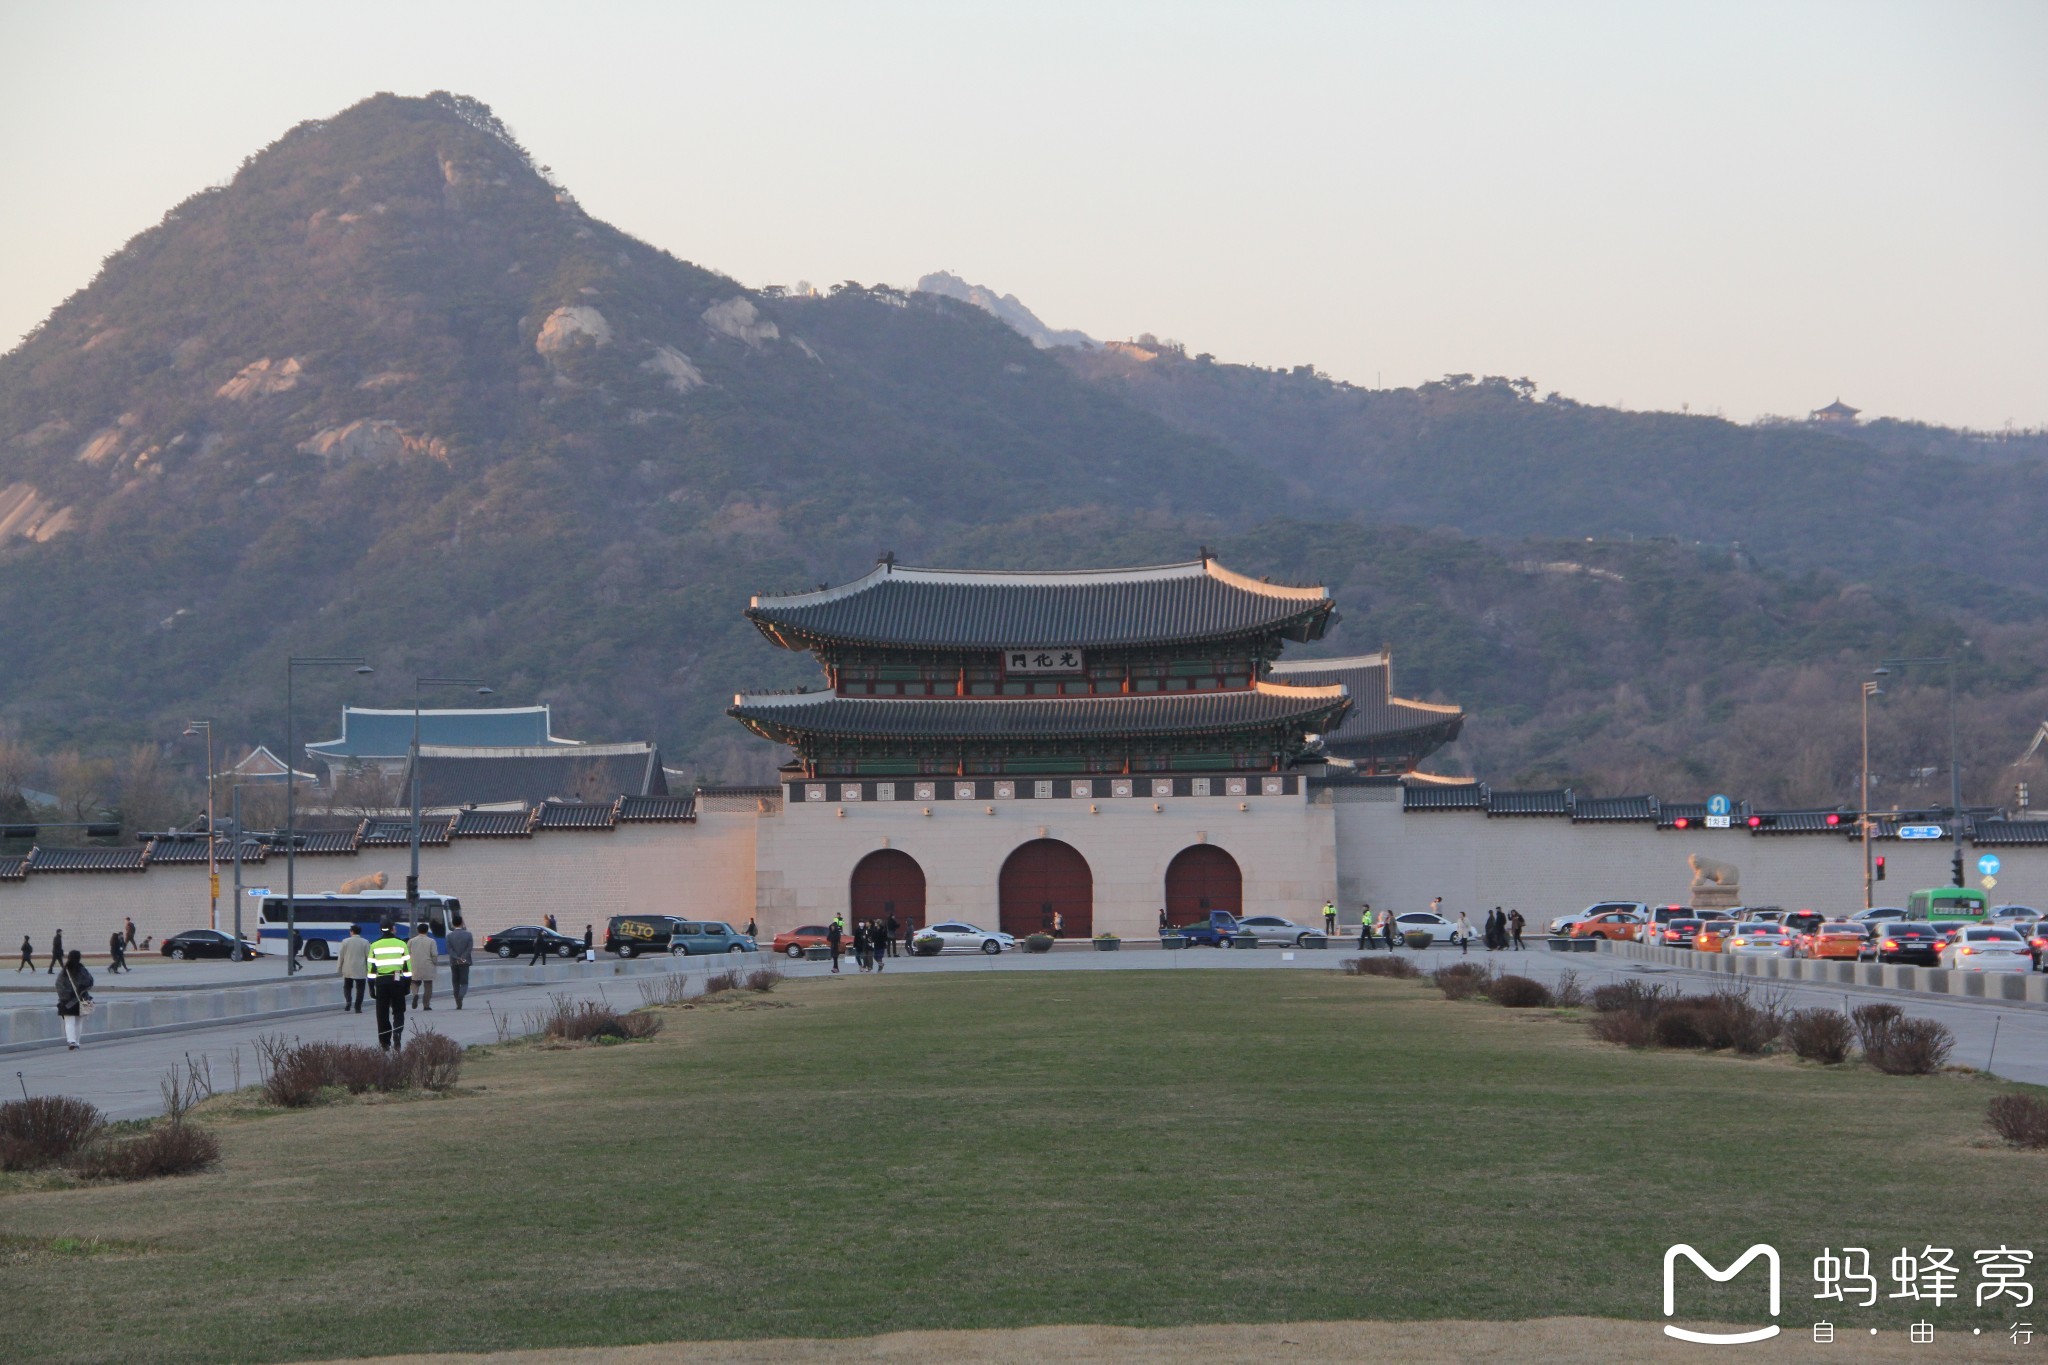 游轮天仁号看到的韩国图片99,韩国旅游景点,风景名胜